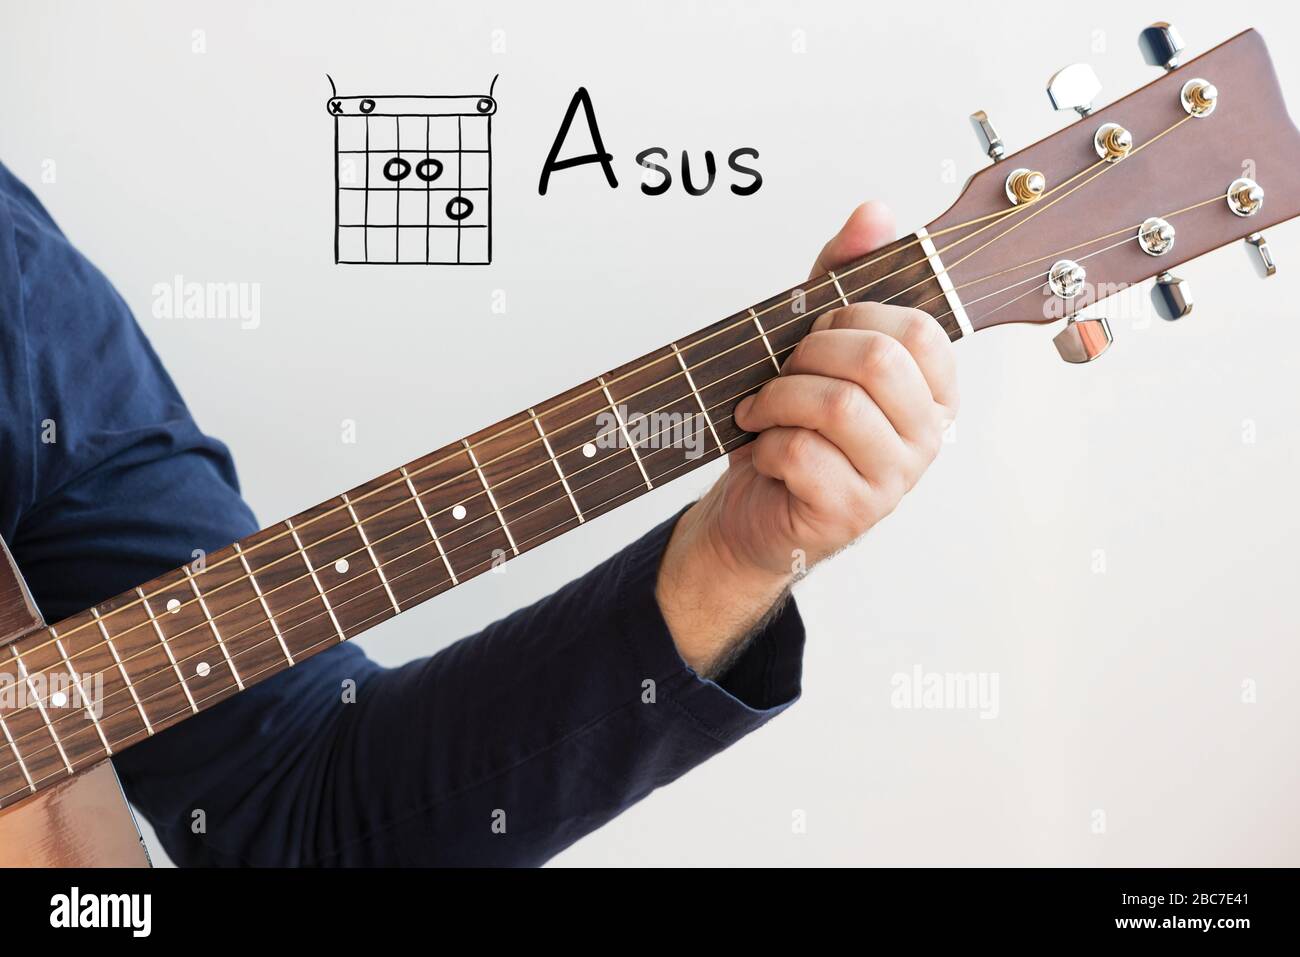 Apprendre la guitare - Homme dans une chemise bleu foncé jouant des accords  de guitare affichés sur le tableau blanc, Chord A sus Photo Stock - Alamy